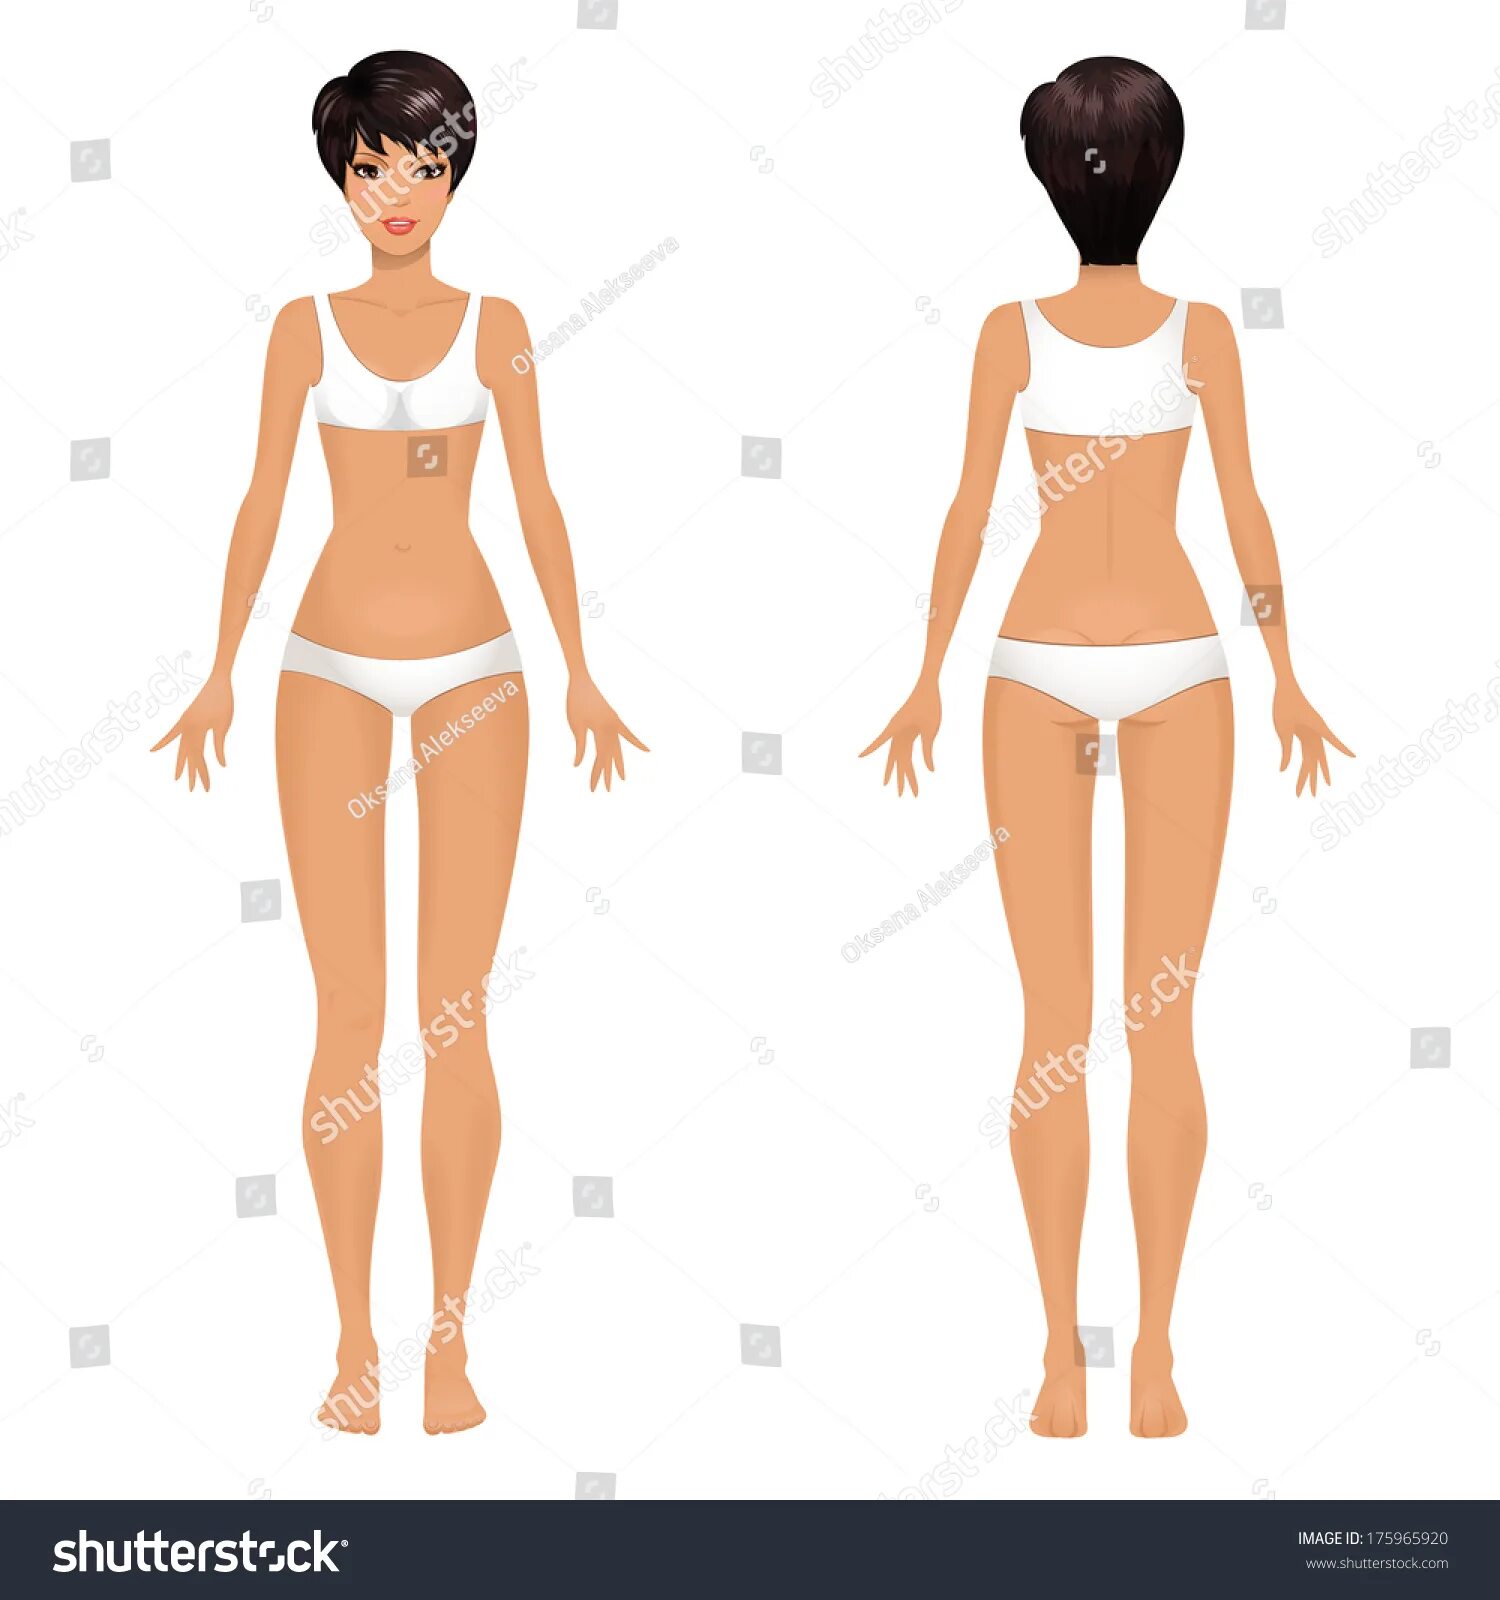 Тело скопировать. Женщина с периди и зади. Женское тело в полный рост. Женщина вид спереди.